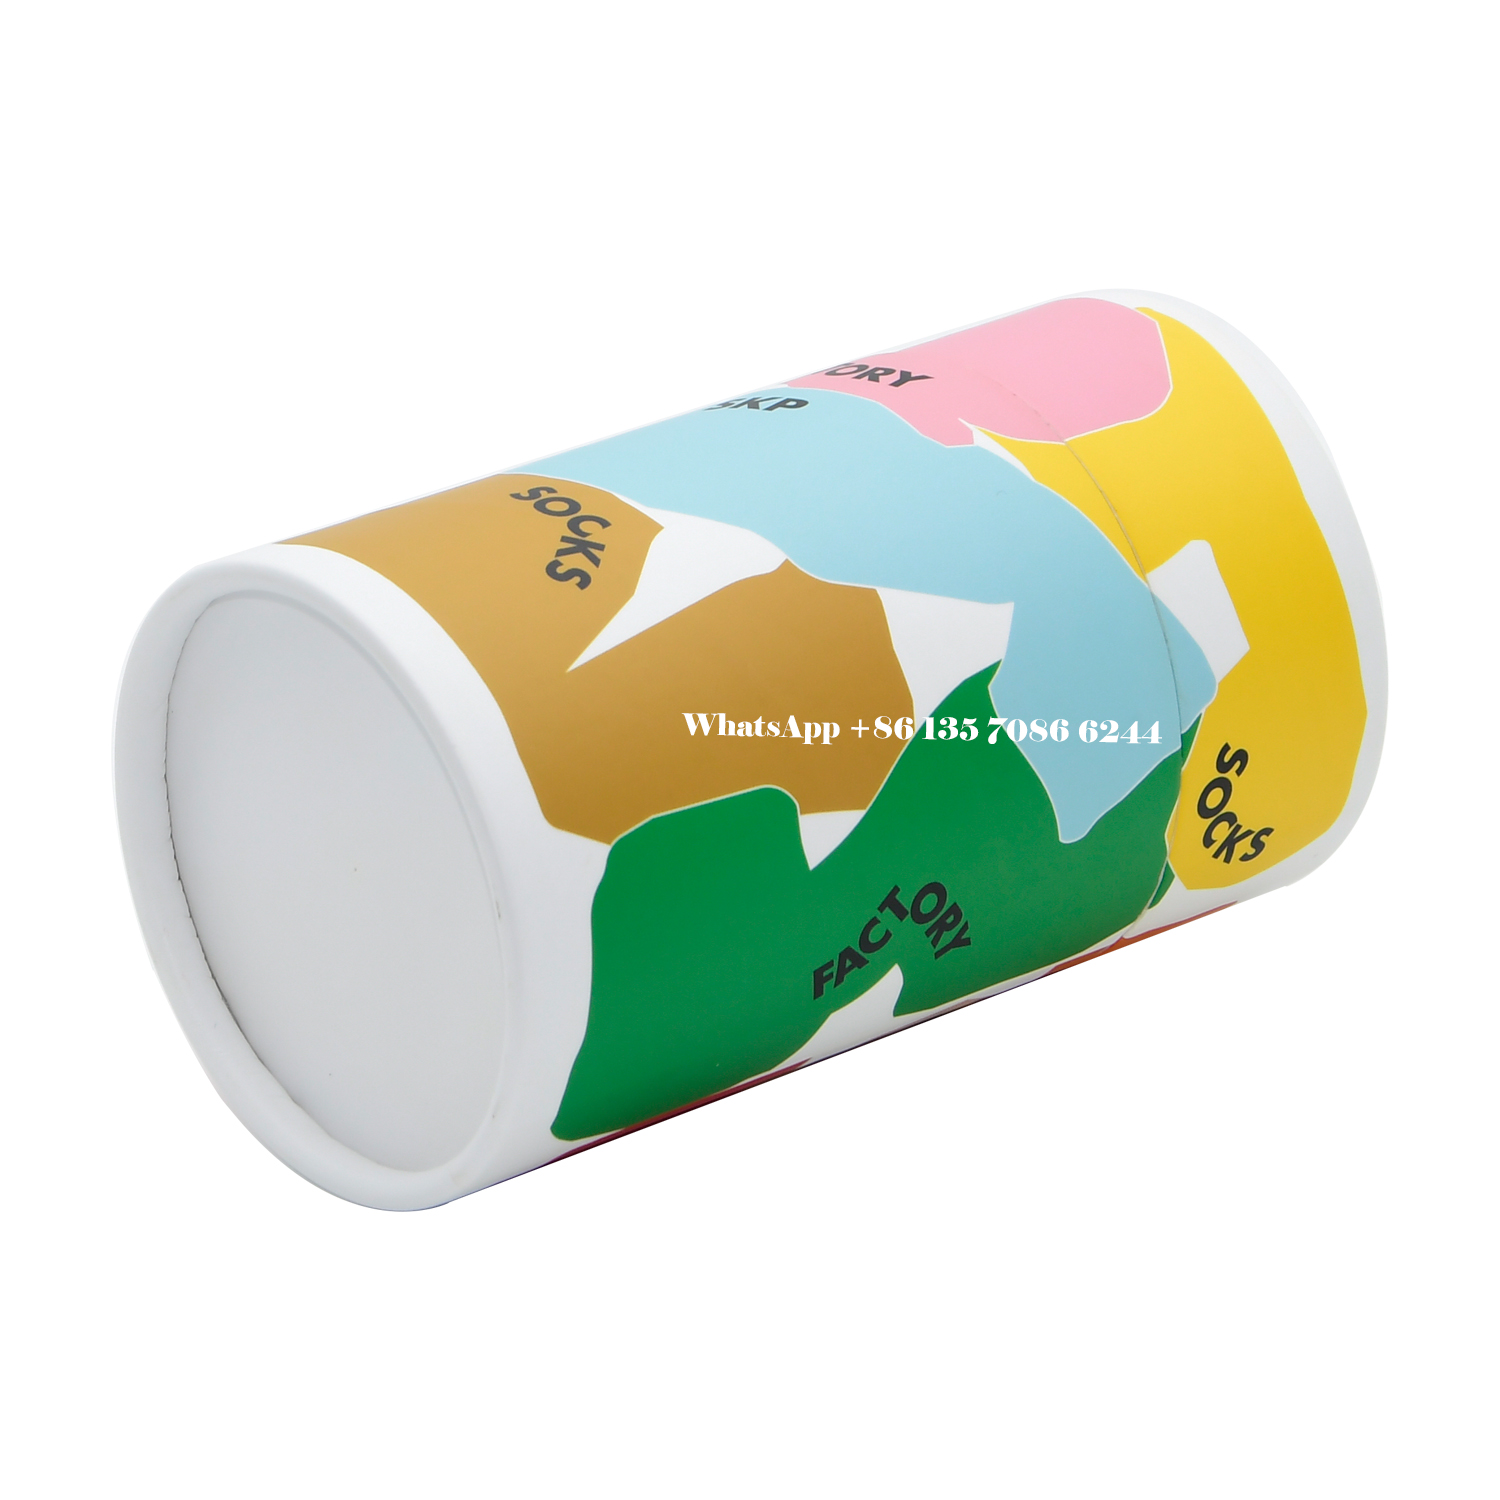  Confezione cilindrica in carta per calzini personalizzati  